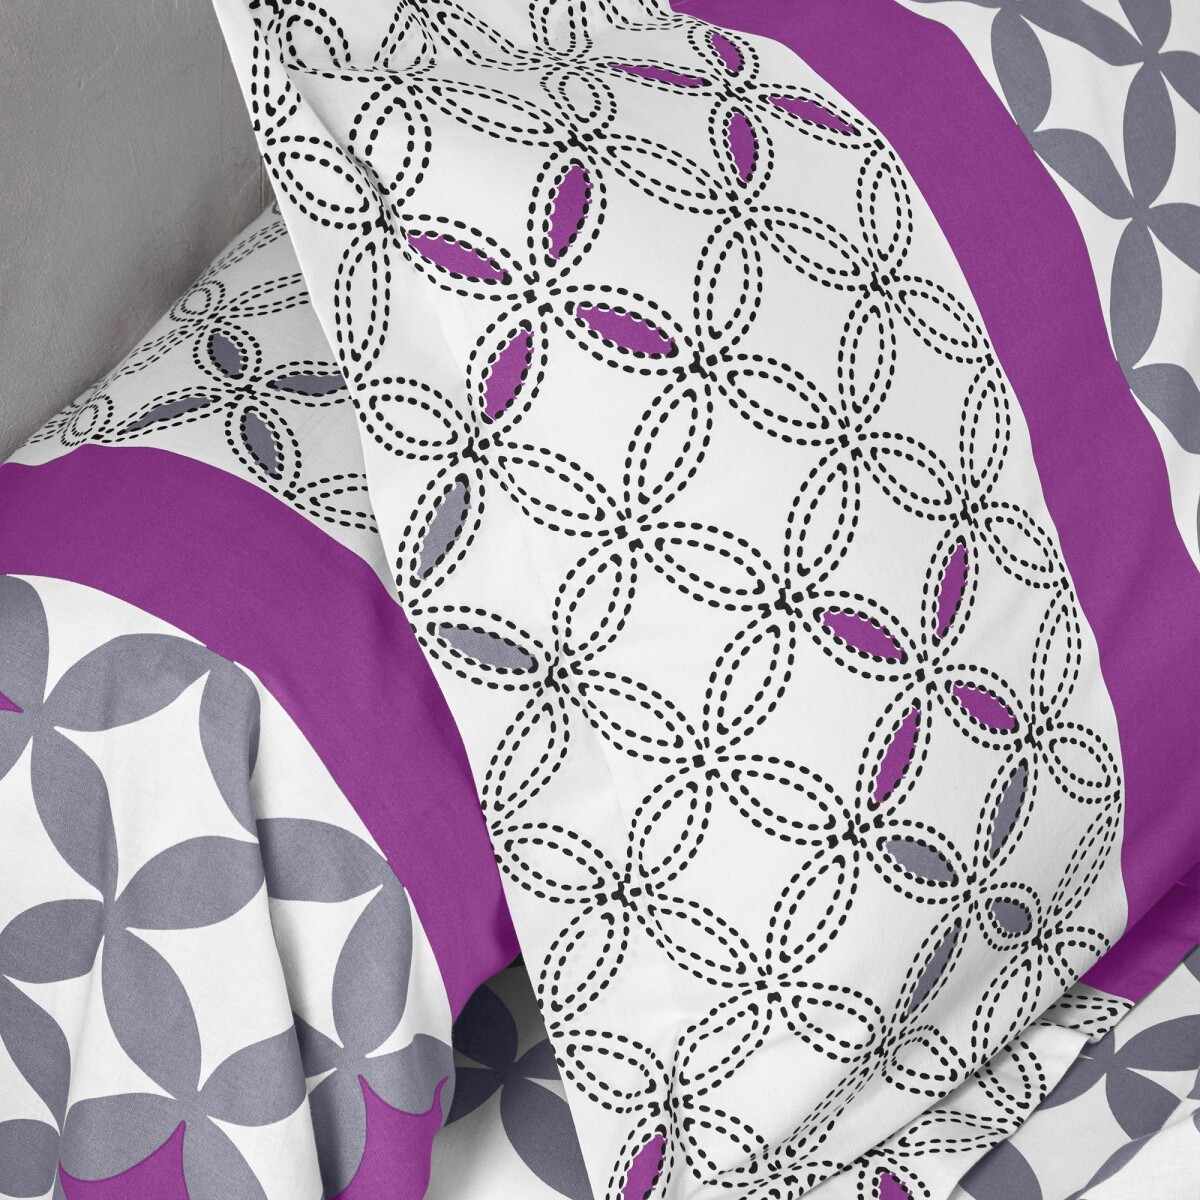 Bavlnená posteľná bielizeň Marlow s geometrickým vzorom